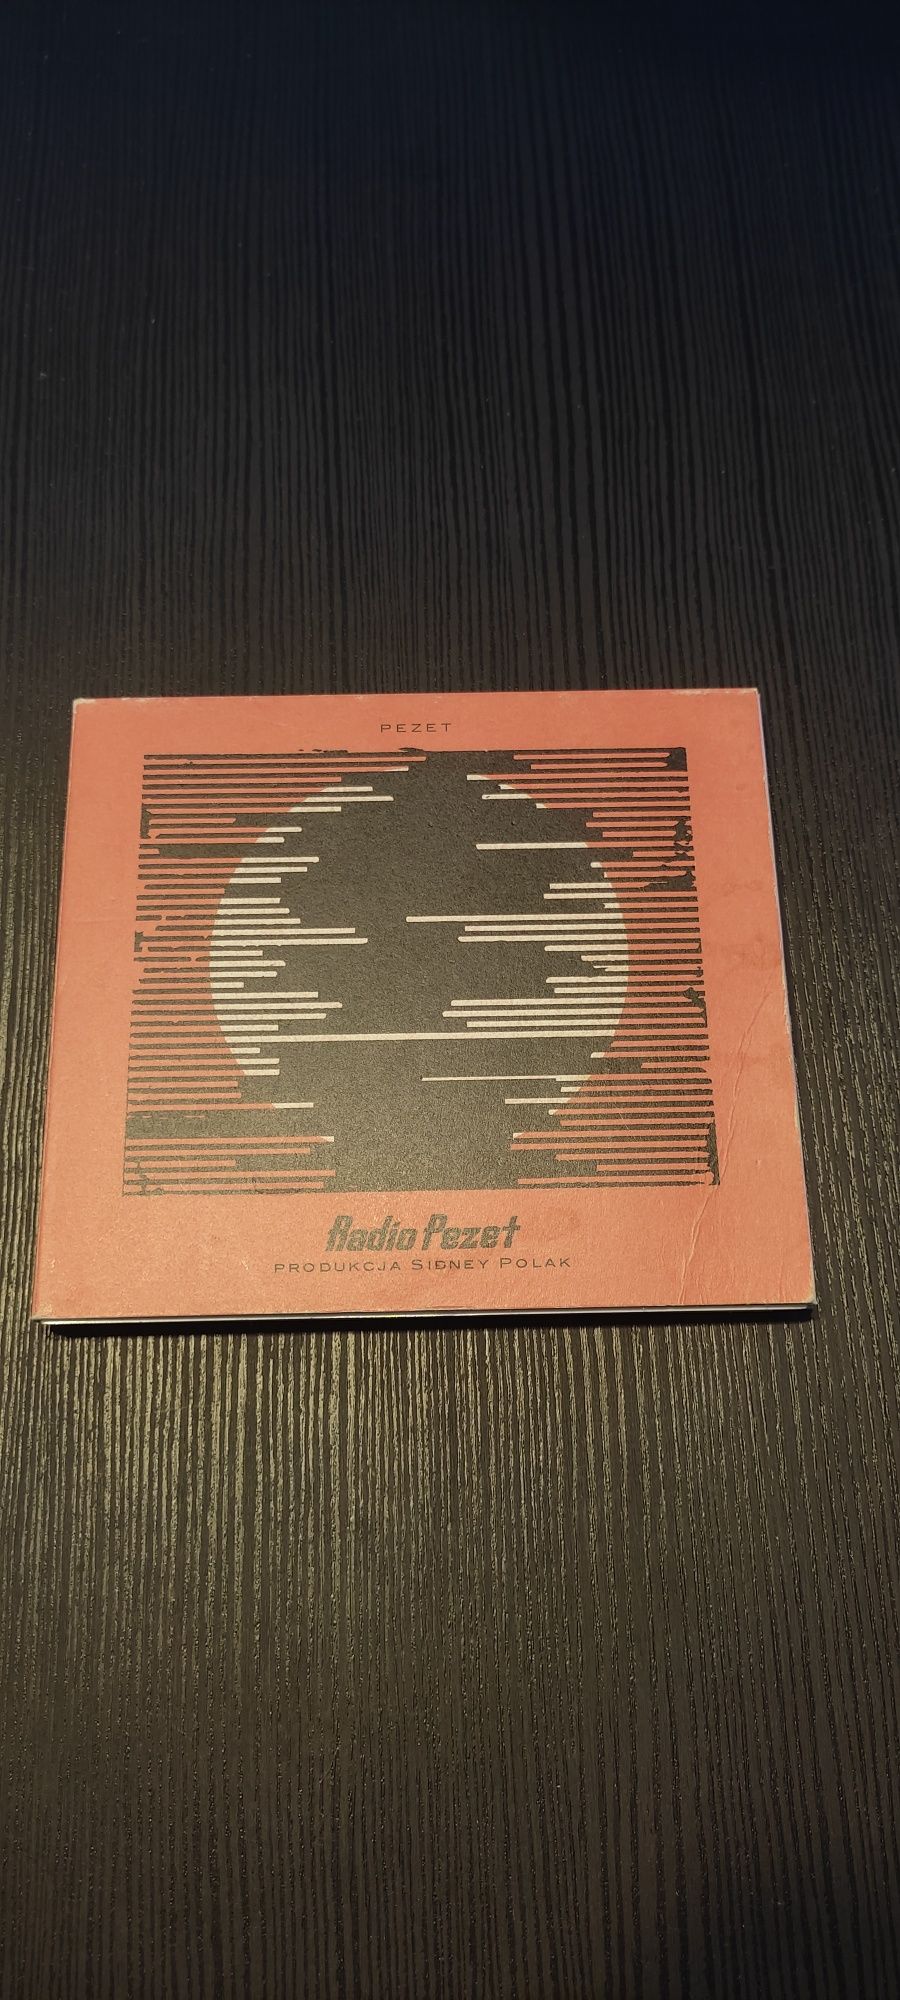 Radio Pezet płyta CD